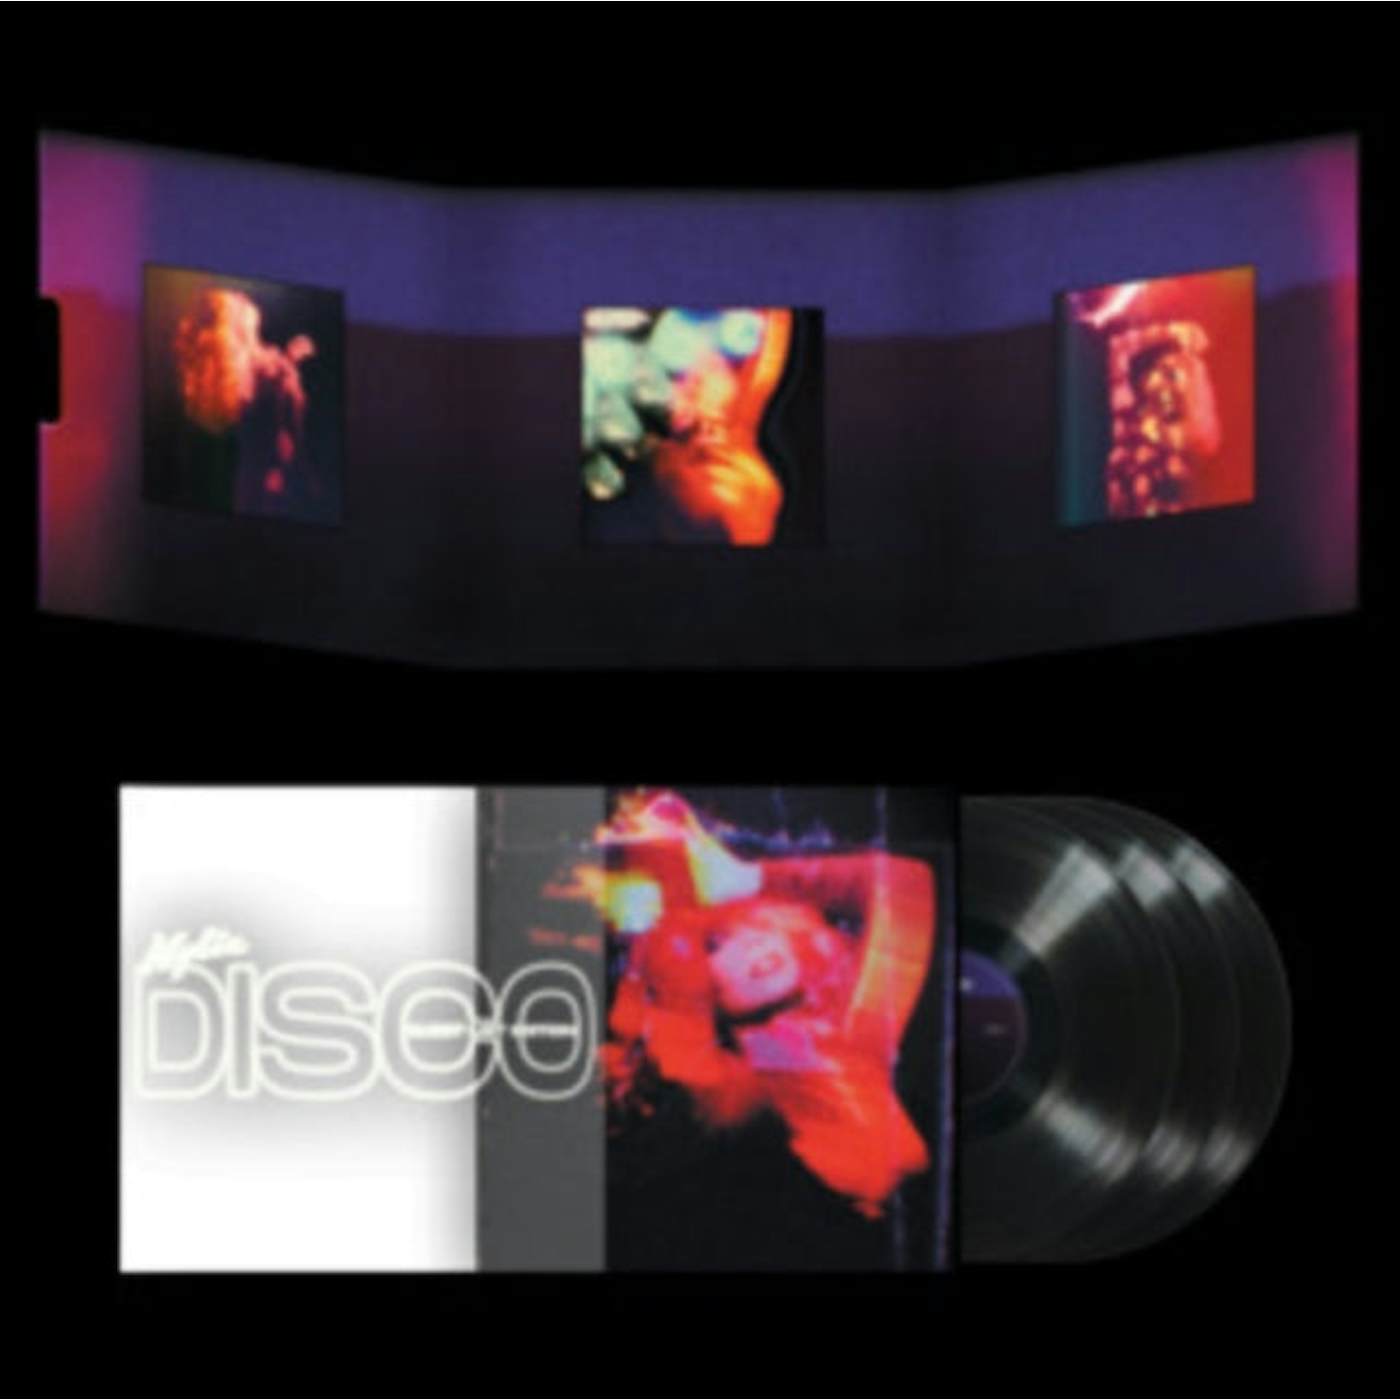 Kylie Minogue LP Vinyl Record - Disco: Guest List Edition